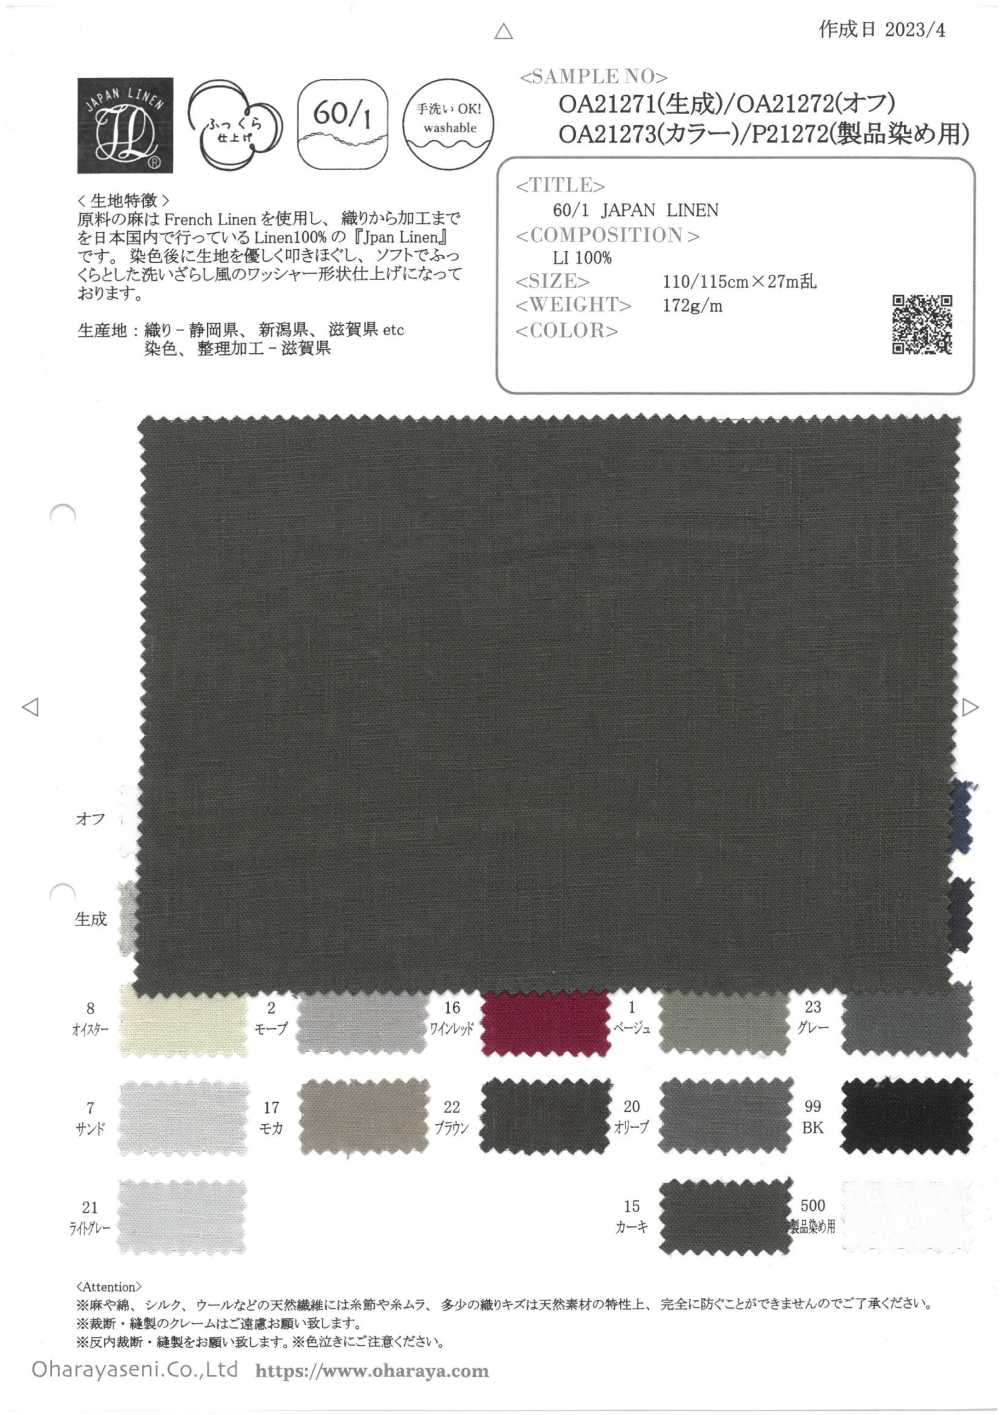 OA21271 60/1・LINHO DO JAPÃO (Cru)[Têxtil / Tecido] Oharayaseni